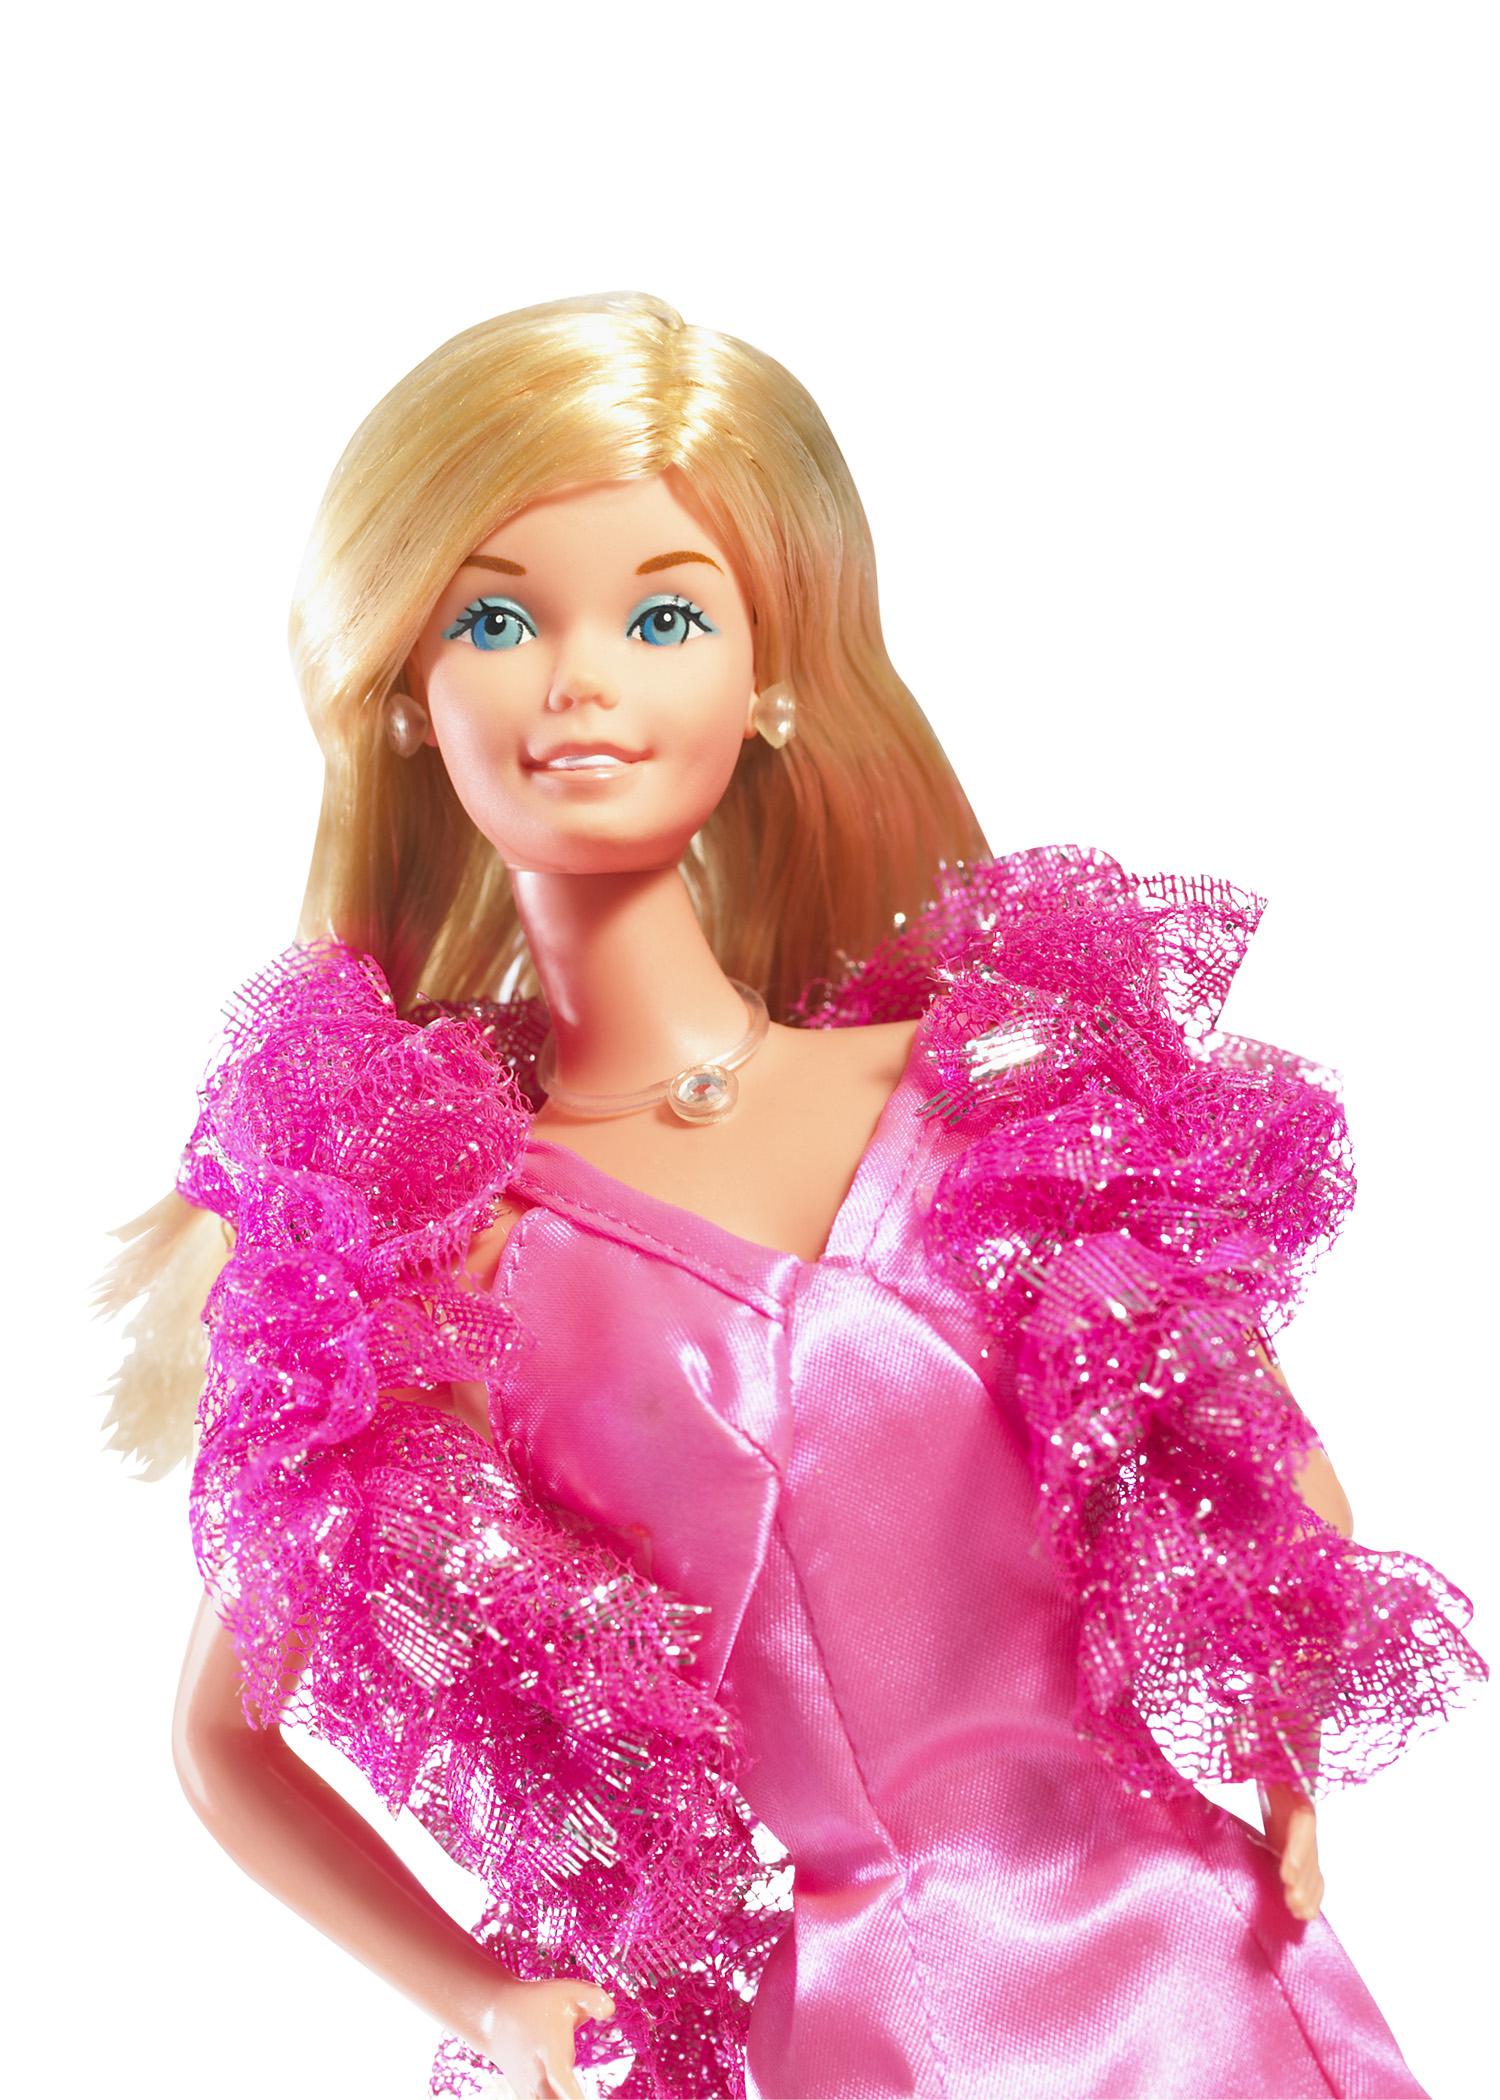 Barbie Superstar creata nel 1977 è la quintessenza dell'icona americana. Lo scultore Joyce Clark definisce i nuovi tratti somatici della bambola ispirandosi all'attrice americana Farrah Fawcett, protagonista del serial televisivo 'Charlie's Angels'. Barbie appare avvolta in un luccicante abito in satin rosa shocking, con un boa di lamé, sorretta da un piedistallo a forma di stella, pronta a scendere in pista e a ballare al ritmo della disco music (foto ©Mattel Inc.)